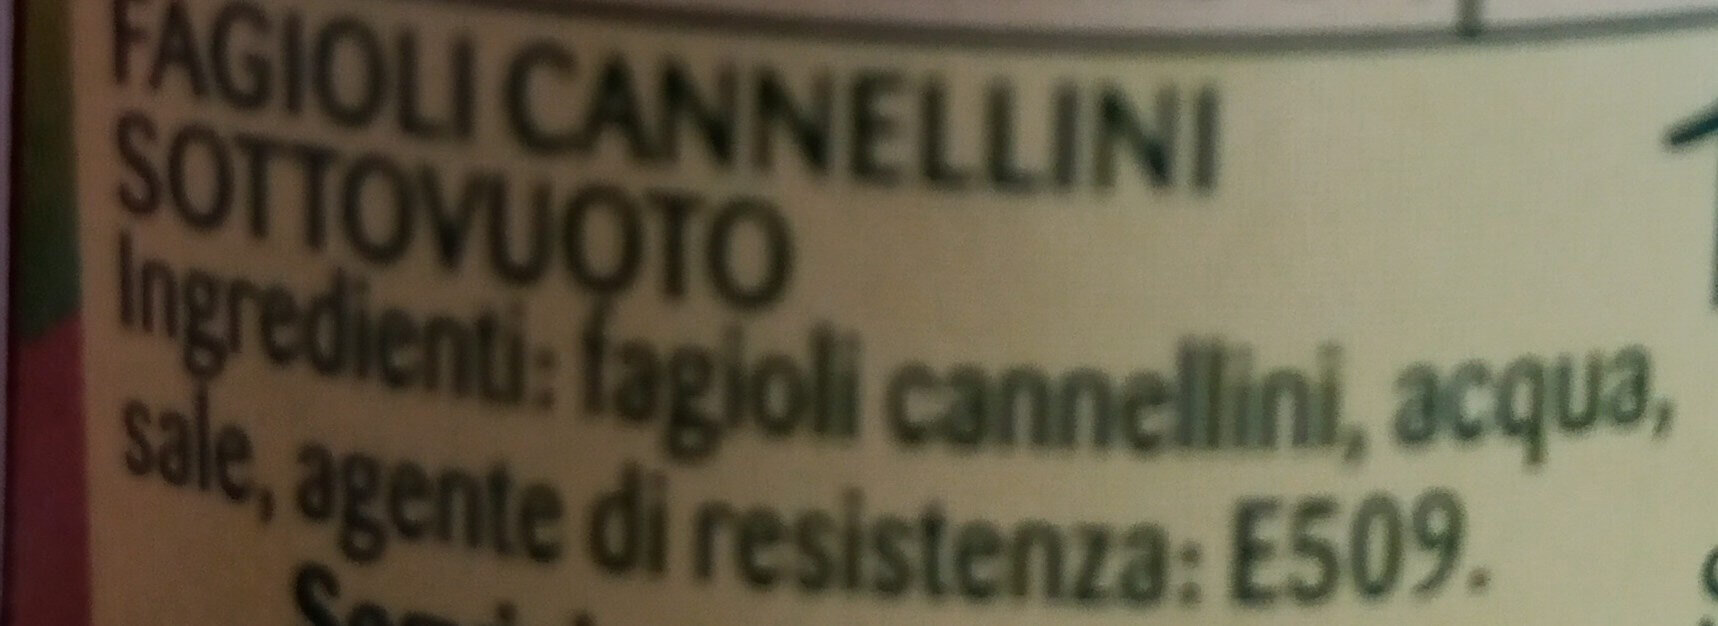 Cannellini al vapore - Ingrédients - it